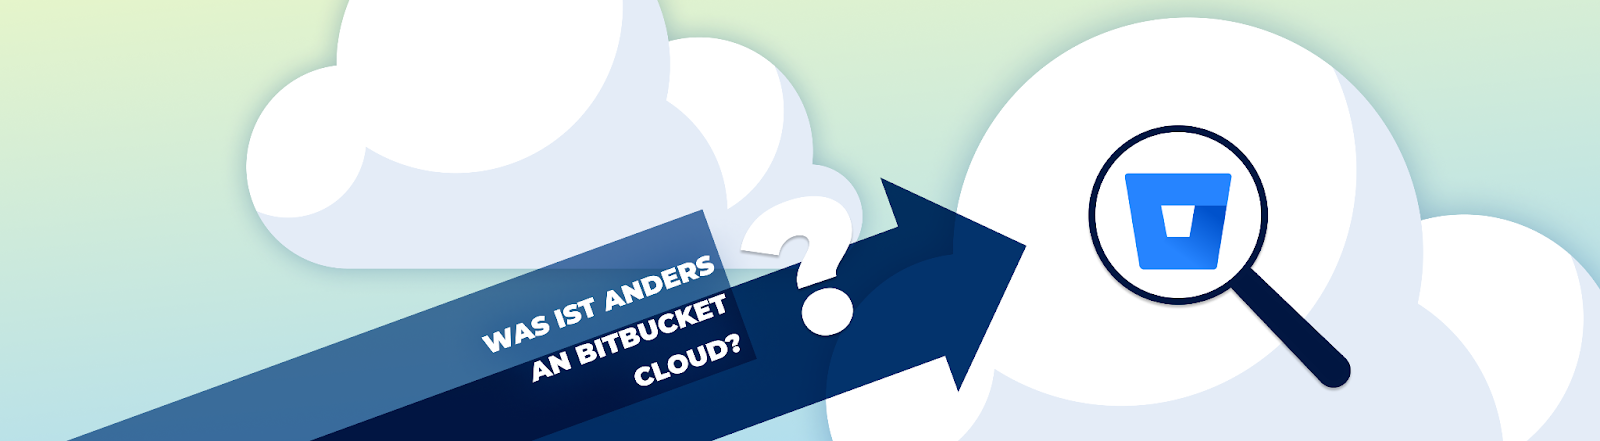 Bitbucket Cloud